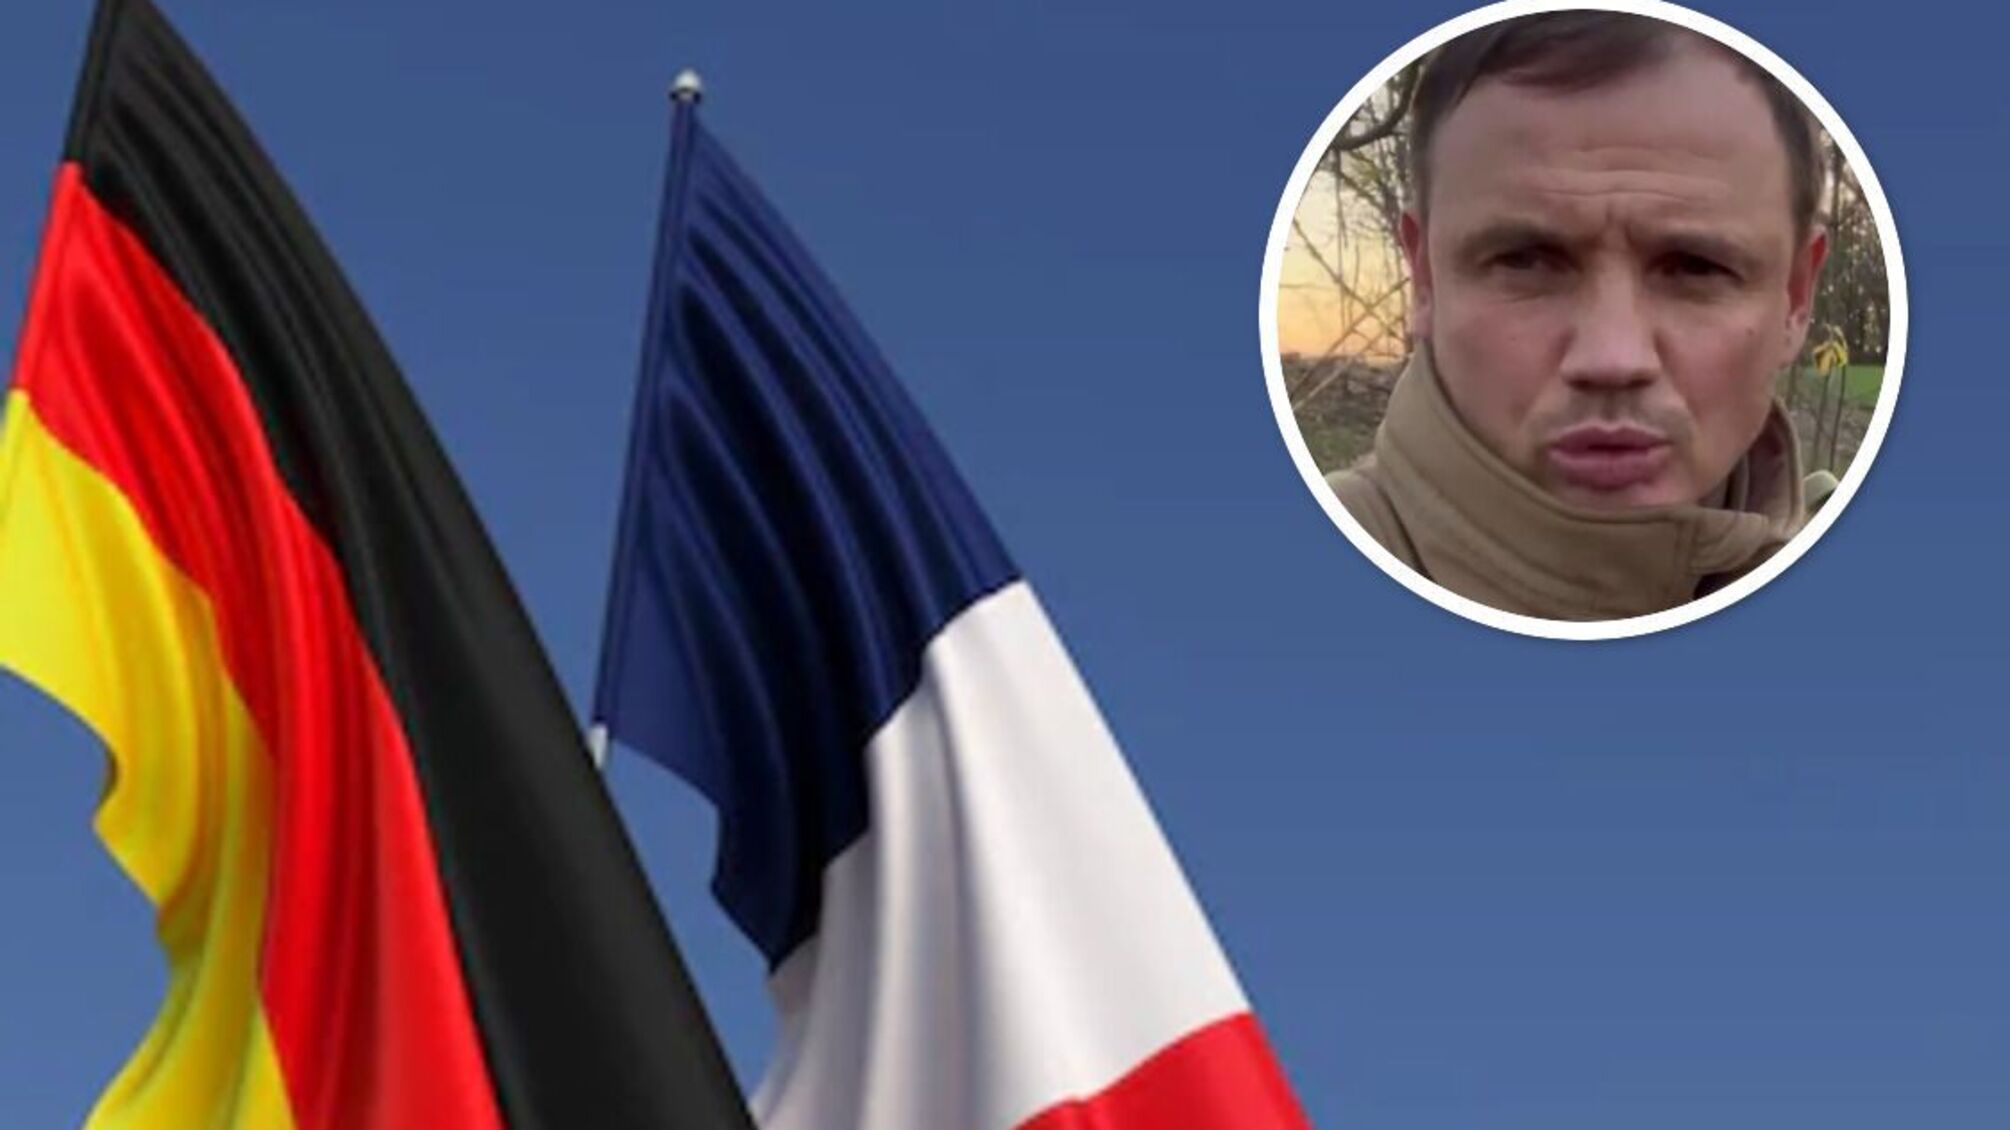 'Французская республика' и 'Немецкая область': гауляйтер Стремоусов анонсировал псевдореферендумы в Европе (видео)